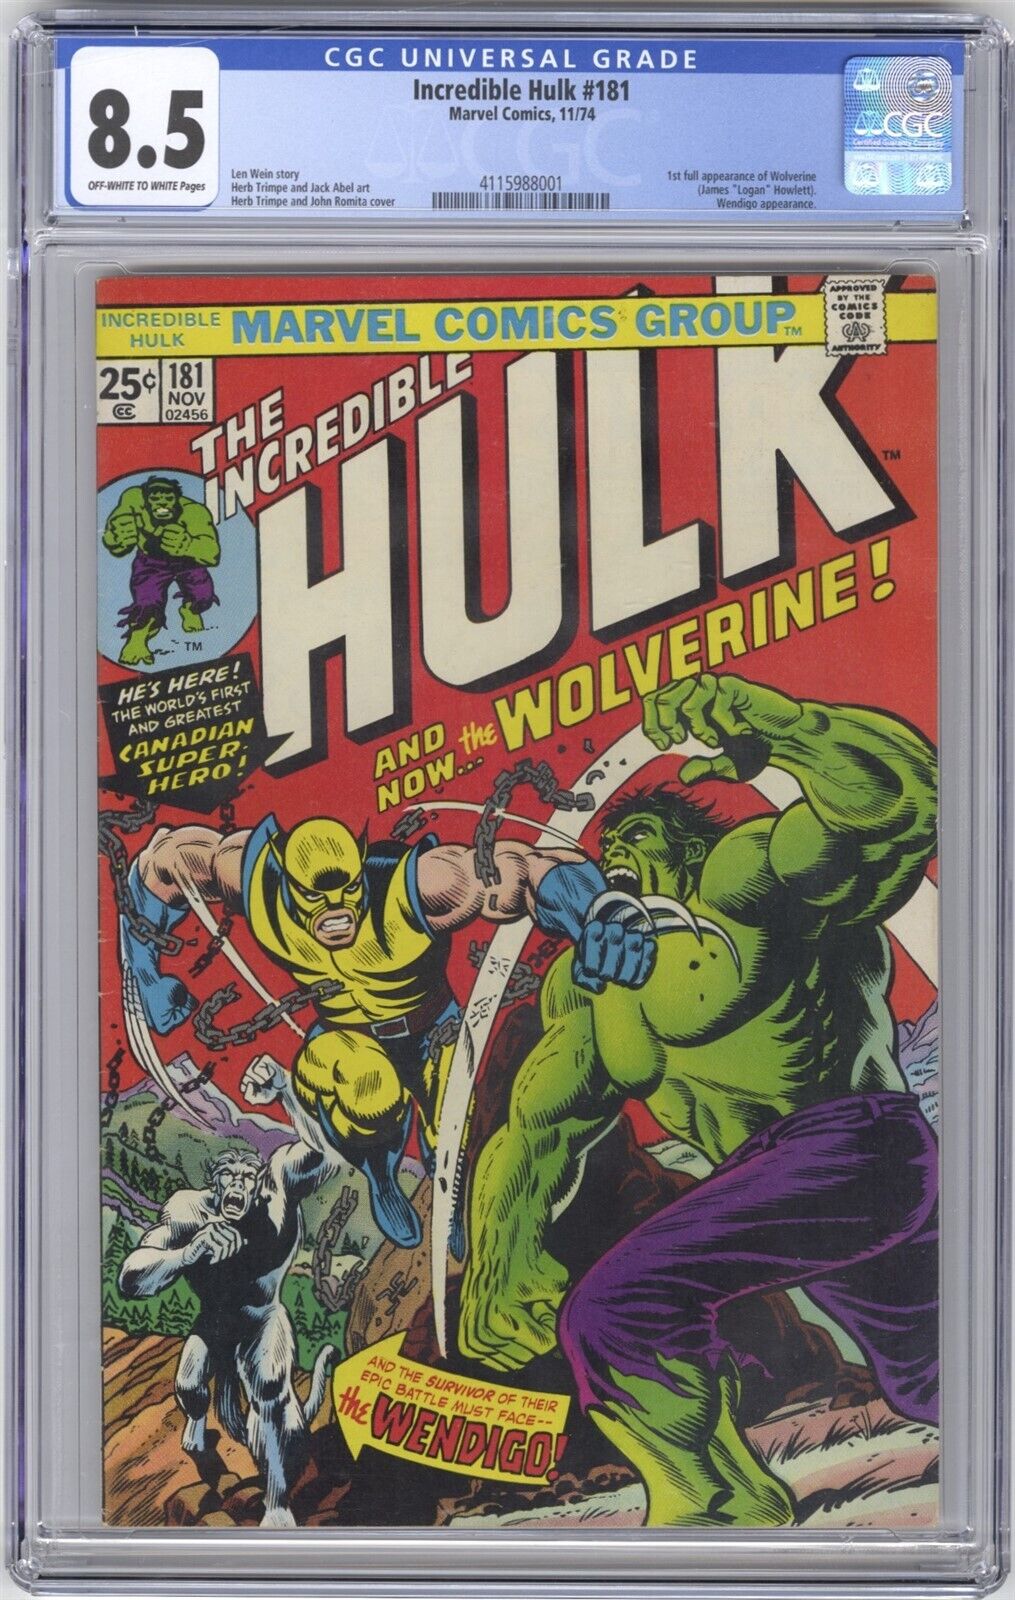 Incredible Hulk 181 CGC 85 HI GRADE Marvel Comic KEY 1st Full App of Wolverine